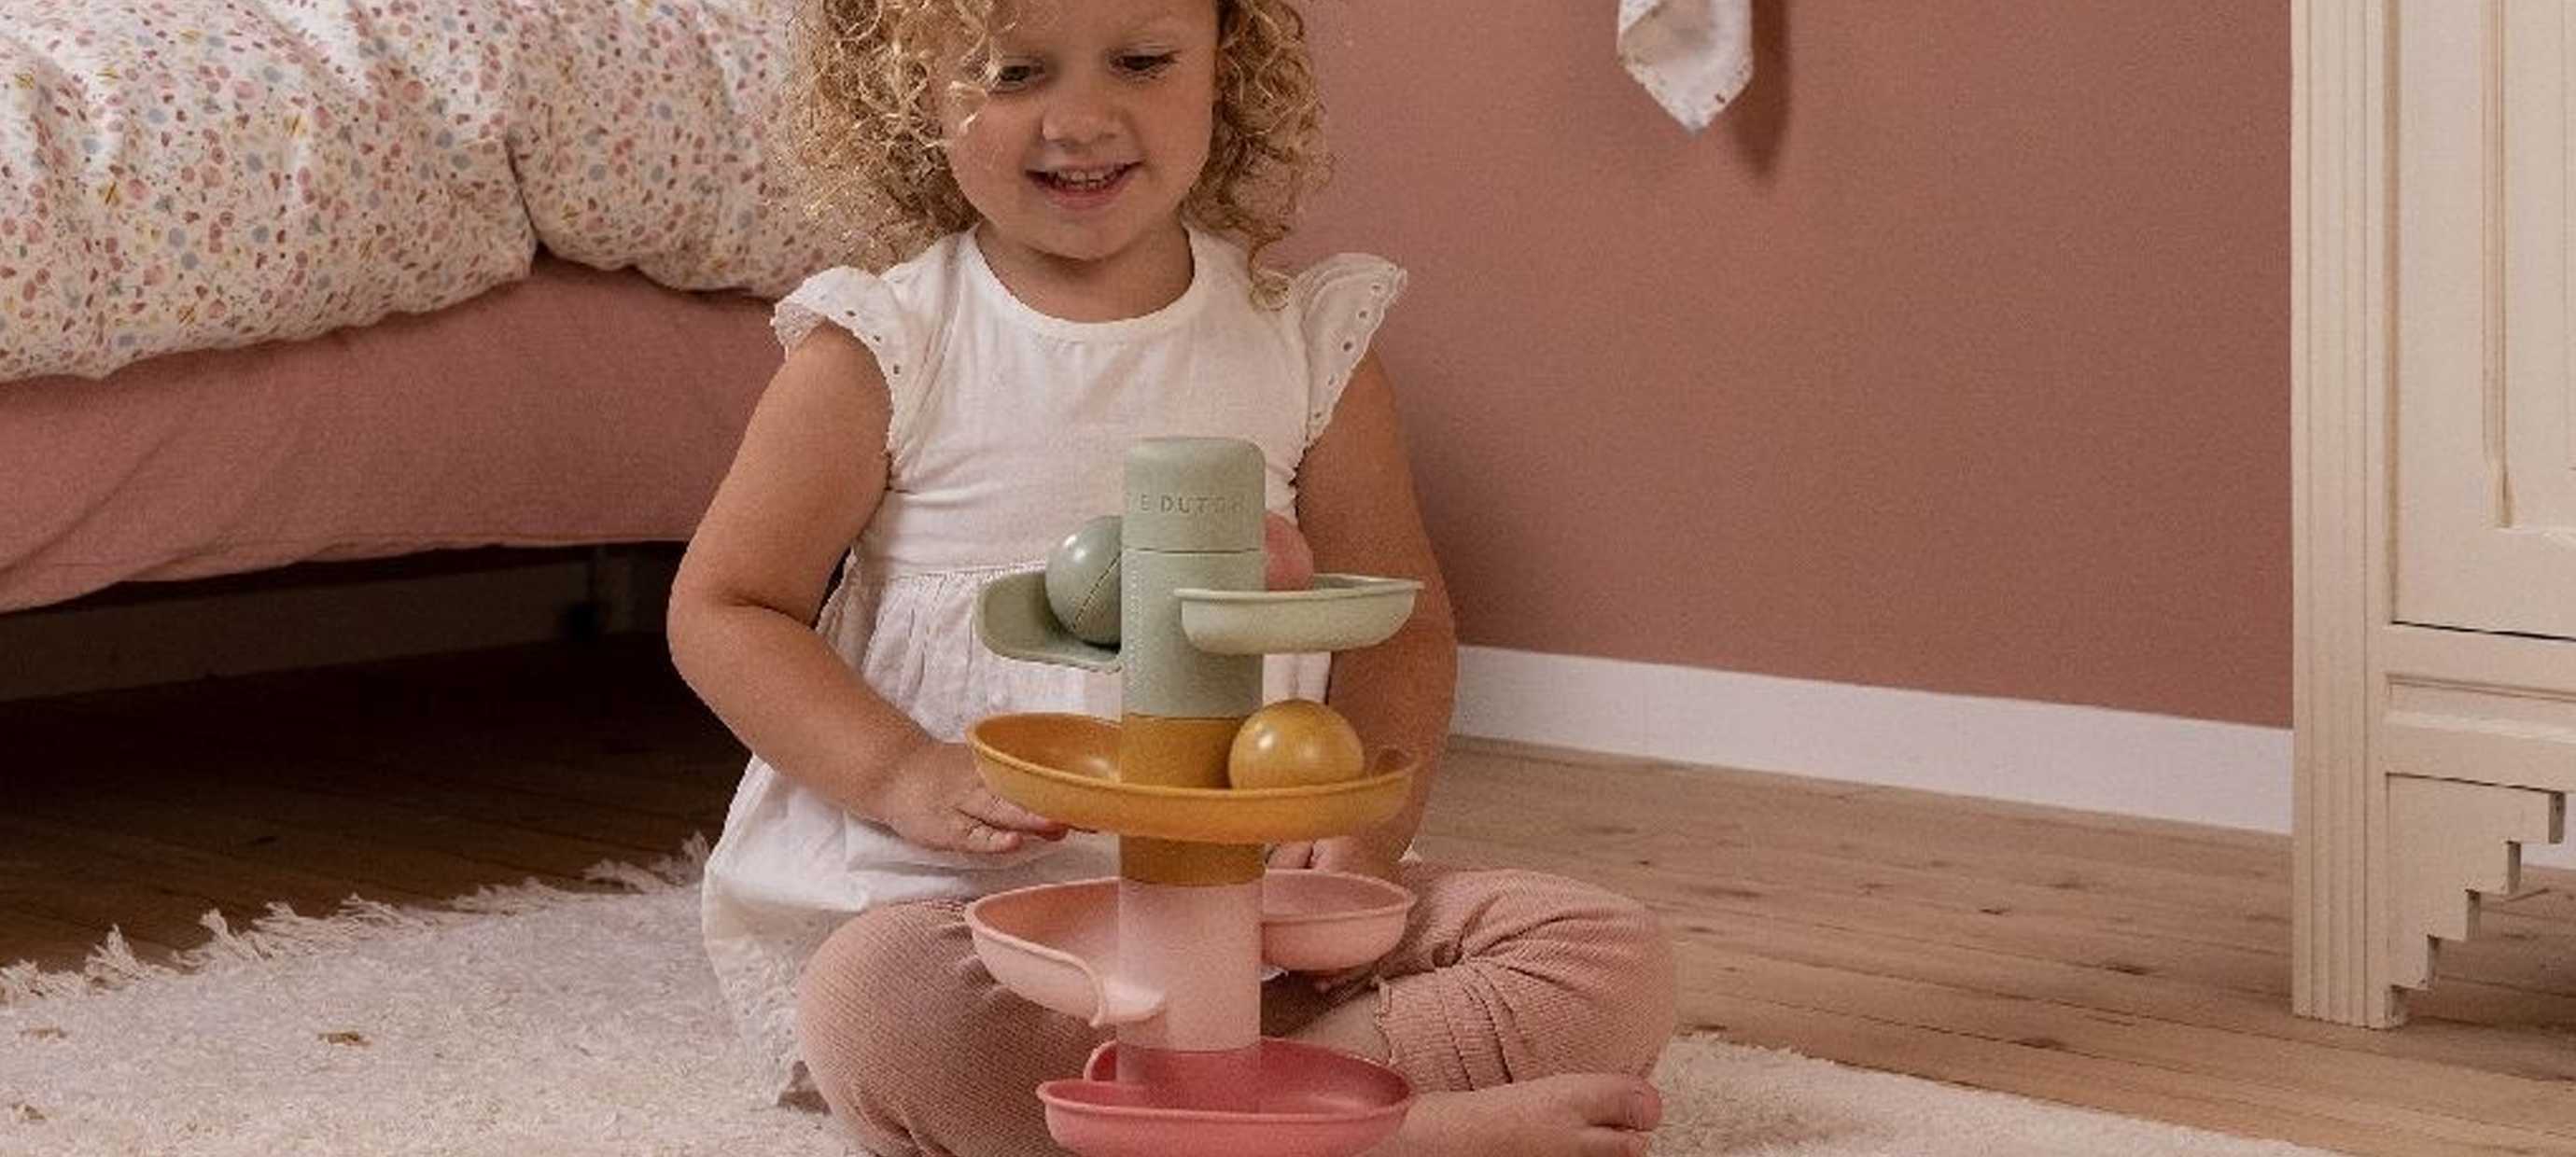 Stimuleer de zintuigen van je kind met sensorisch speelgoed 